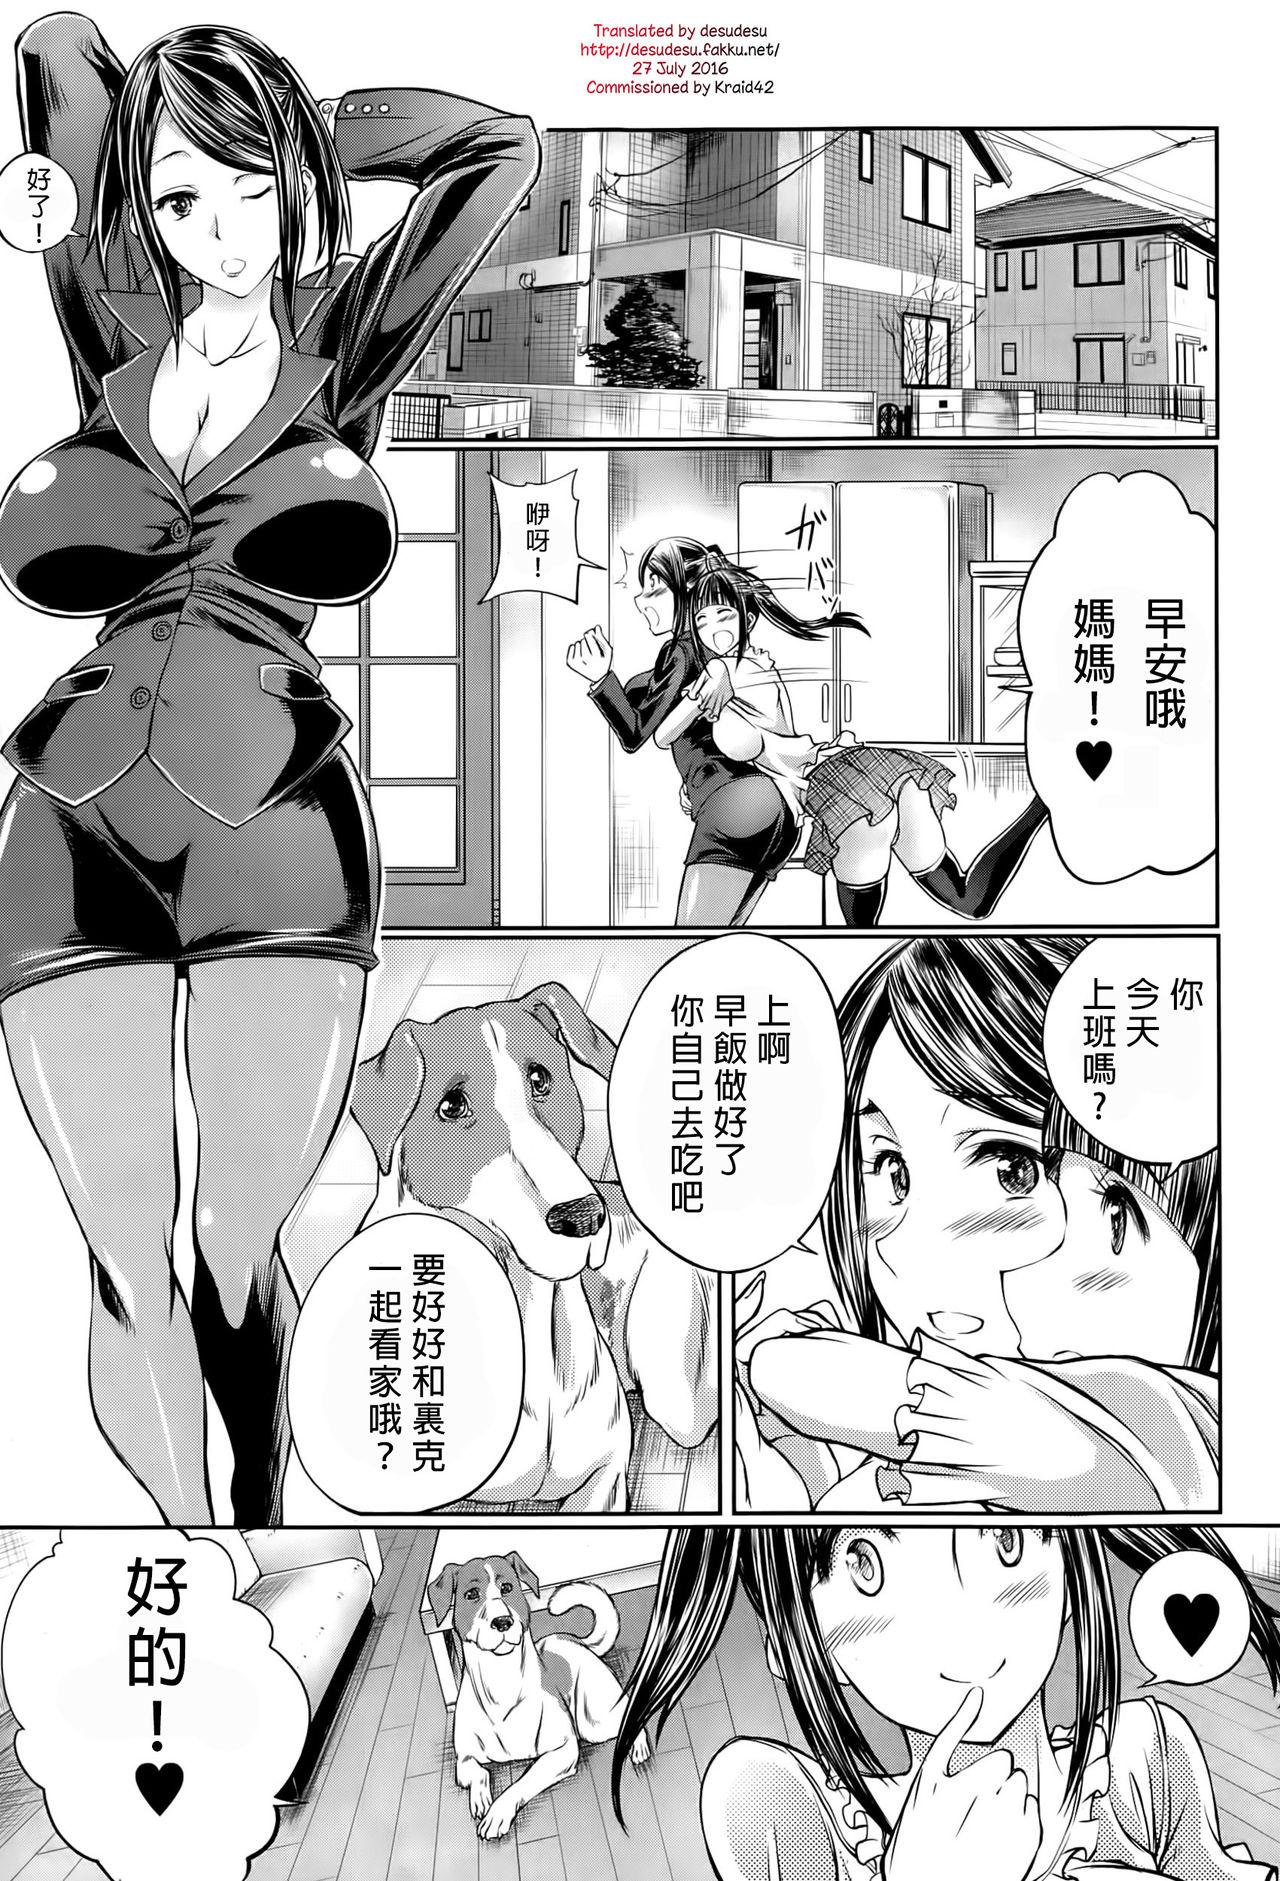 Facial Musume no Kareshi wa Wan-chan?! Okaasan Yurushimasen! | My Daughter's Boyfriend is a dog. As her mother, I won't allow it! Women - Page 1